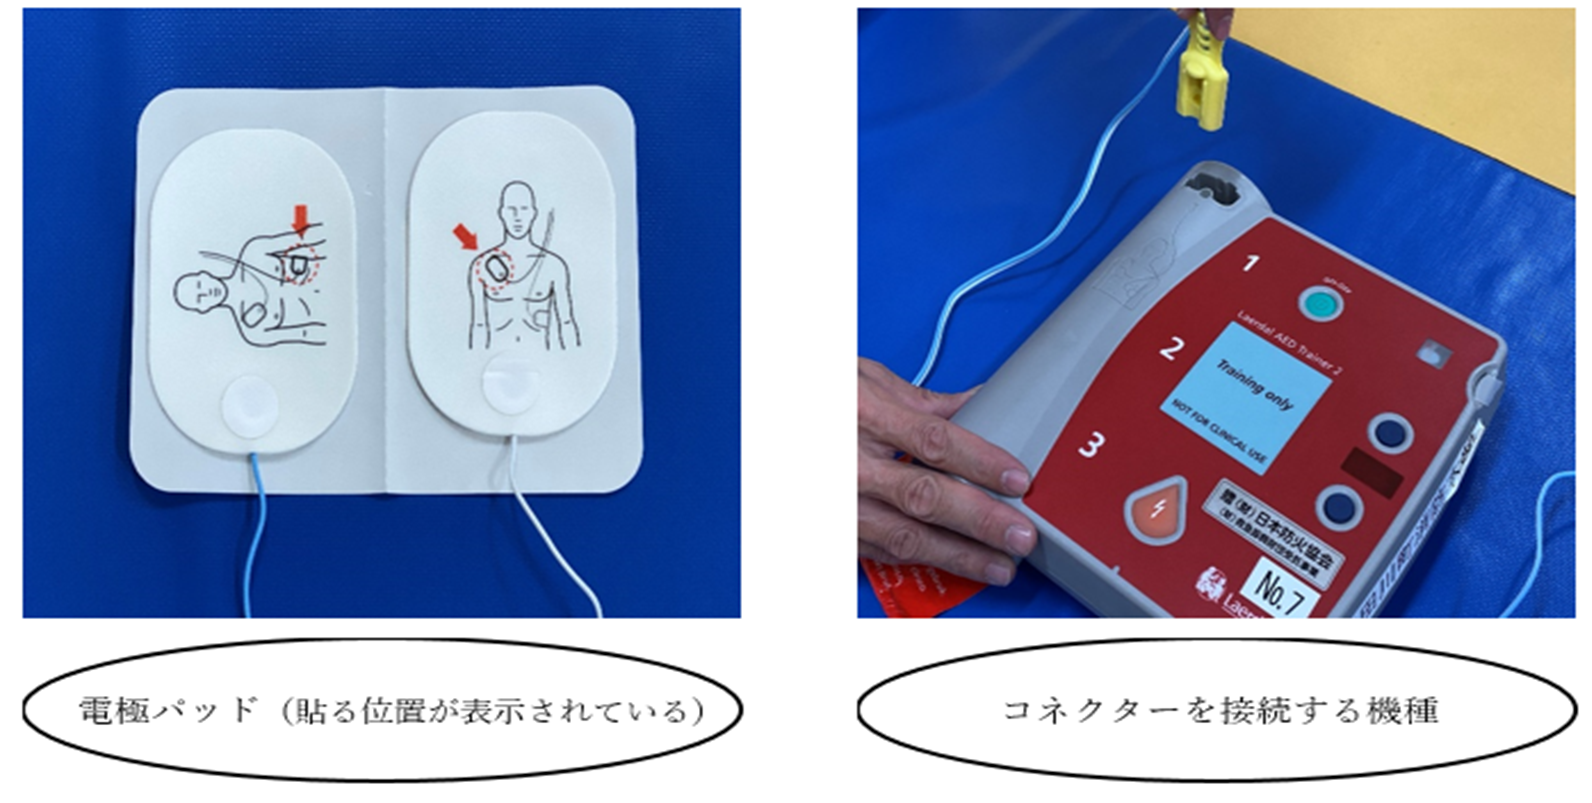 この画像は、AEDの電極パッドとコネクター接続部のあるAEDの画像です。電極パッドには貼る位置が絵で表示されています。